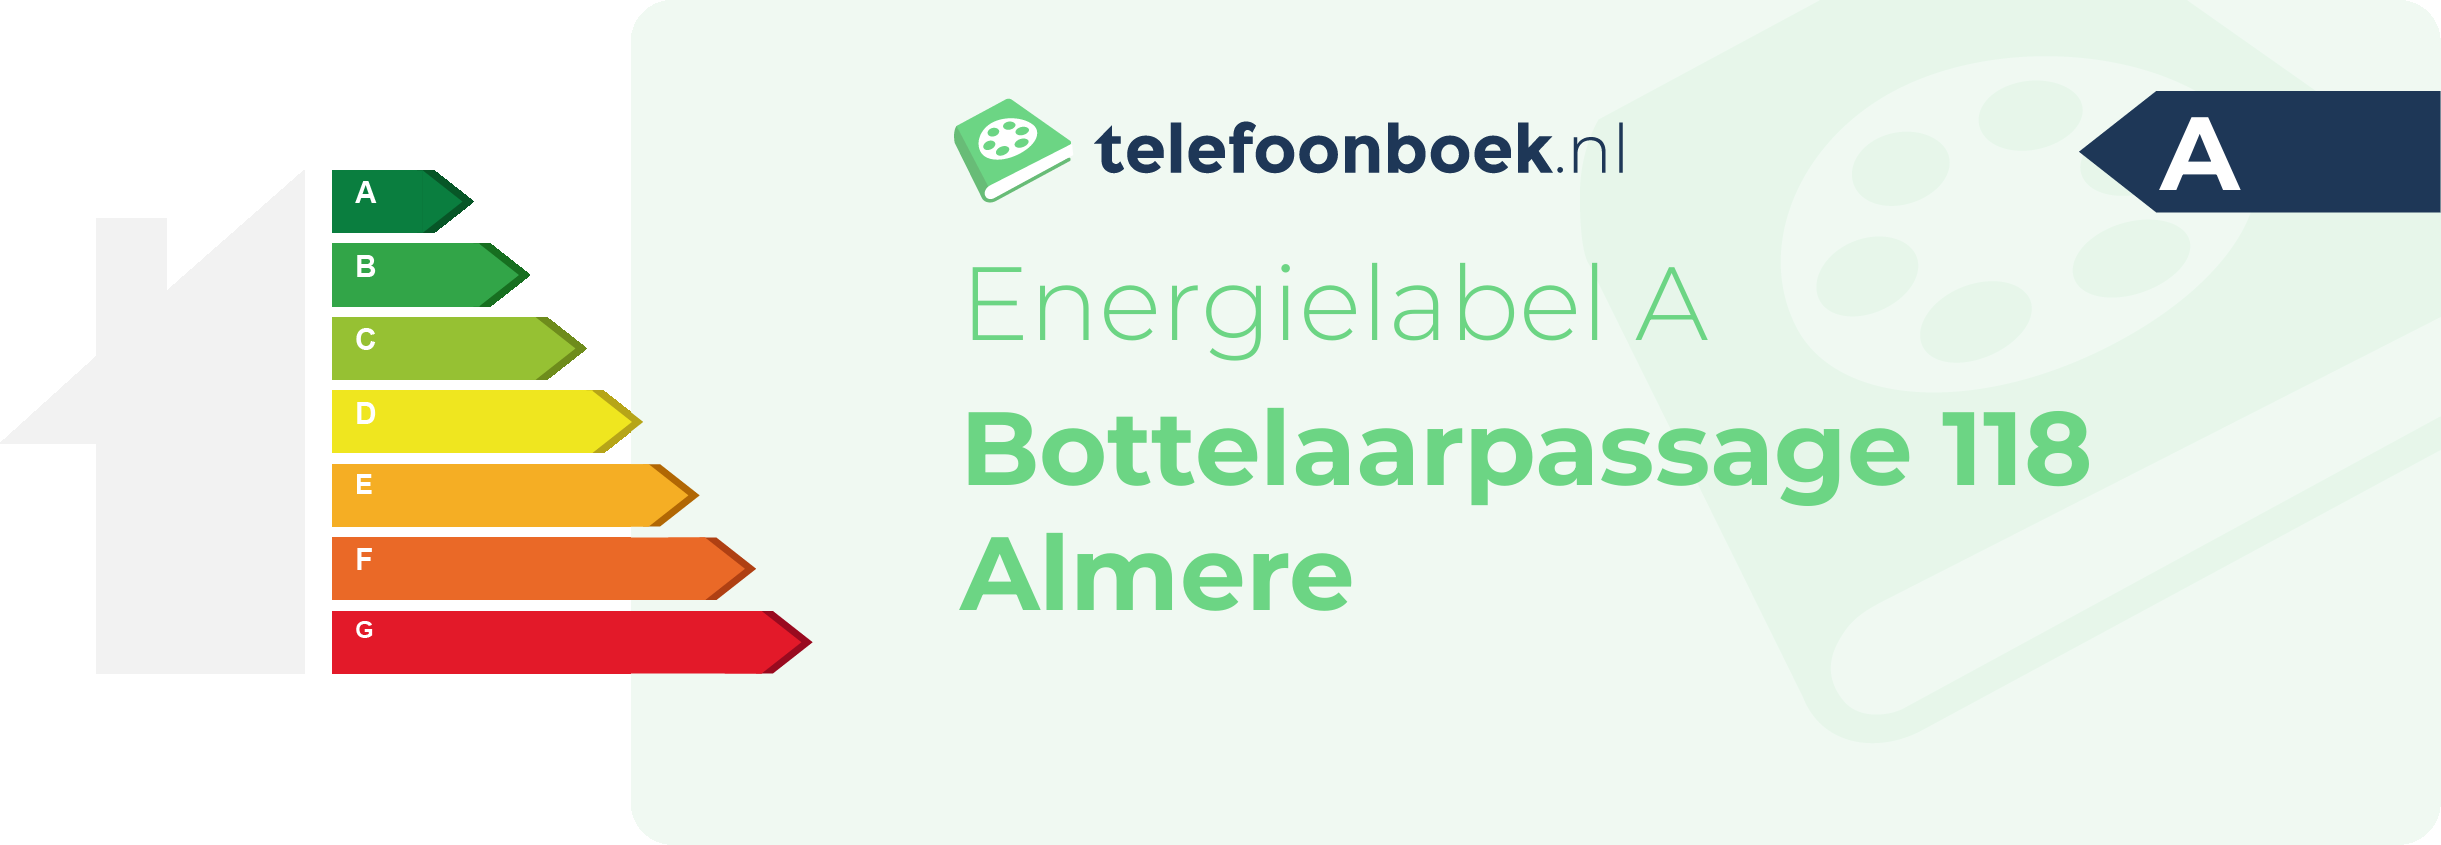 Energielabel Bottelaarpassage 118 Almere